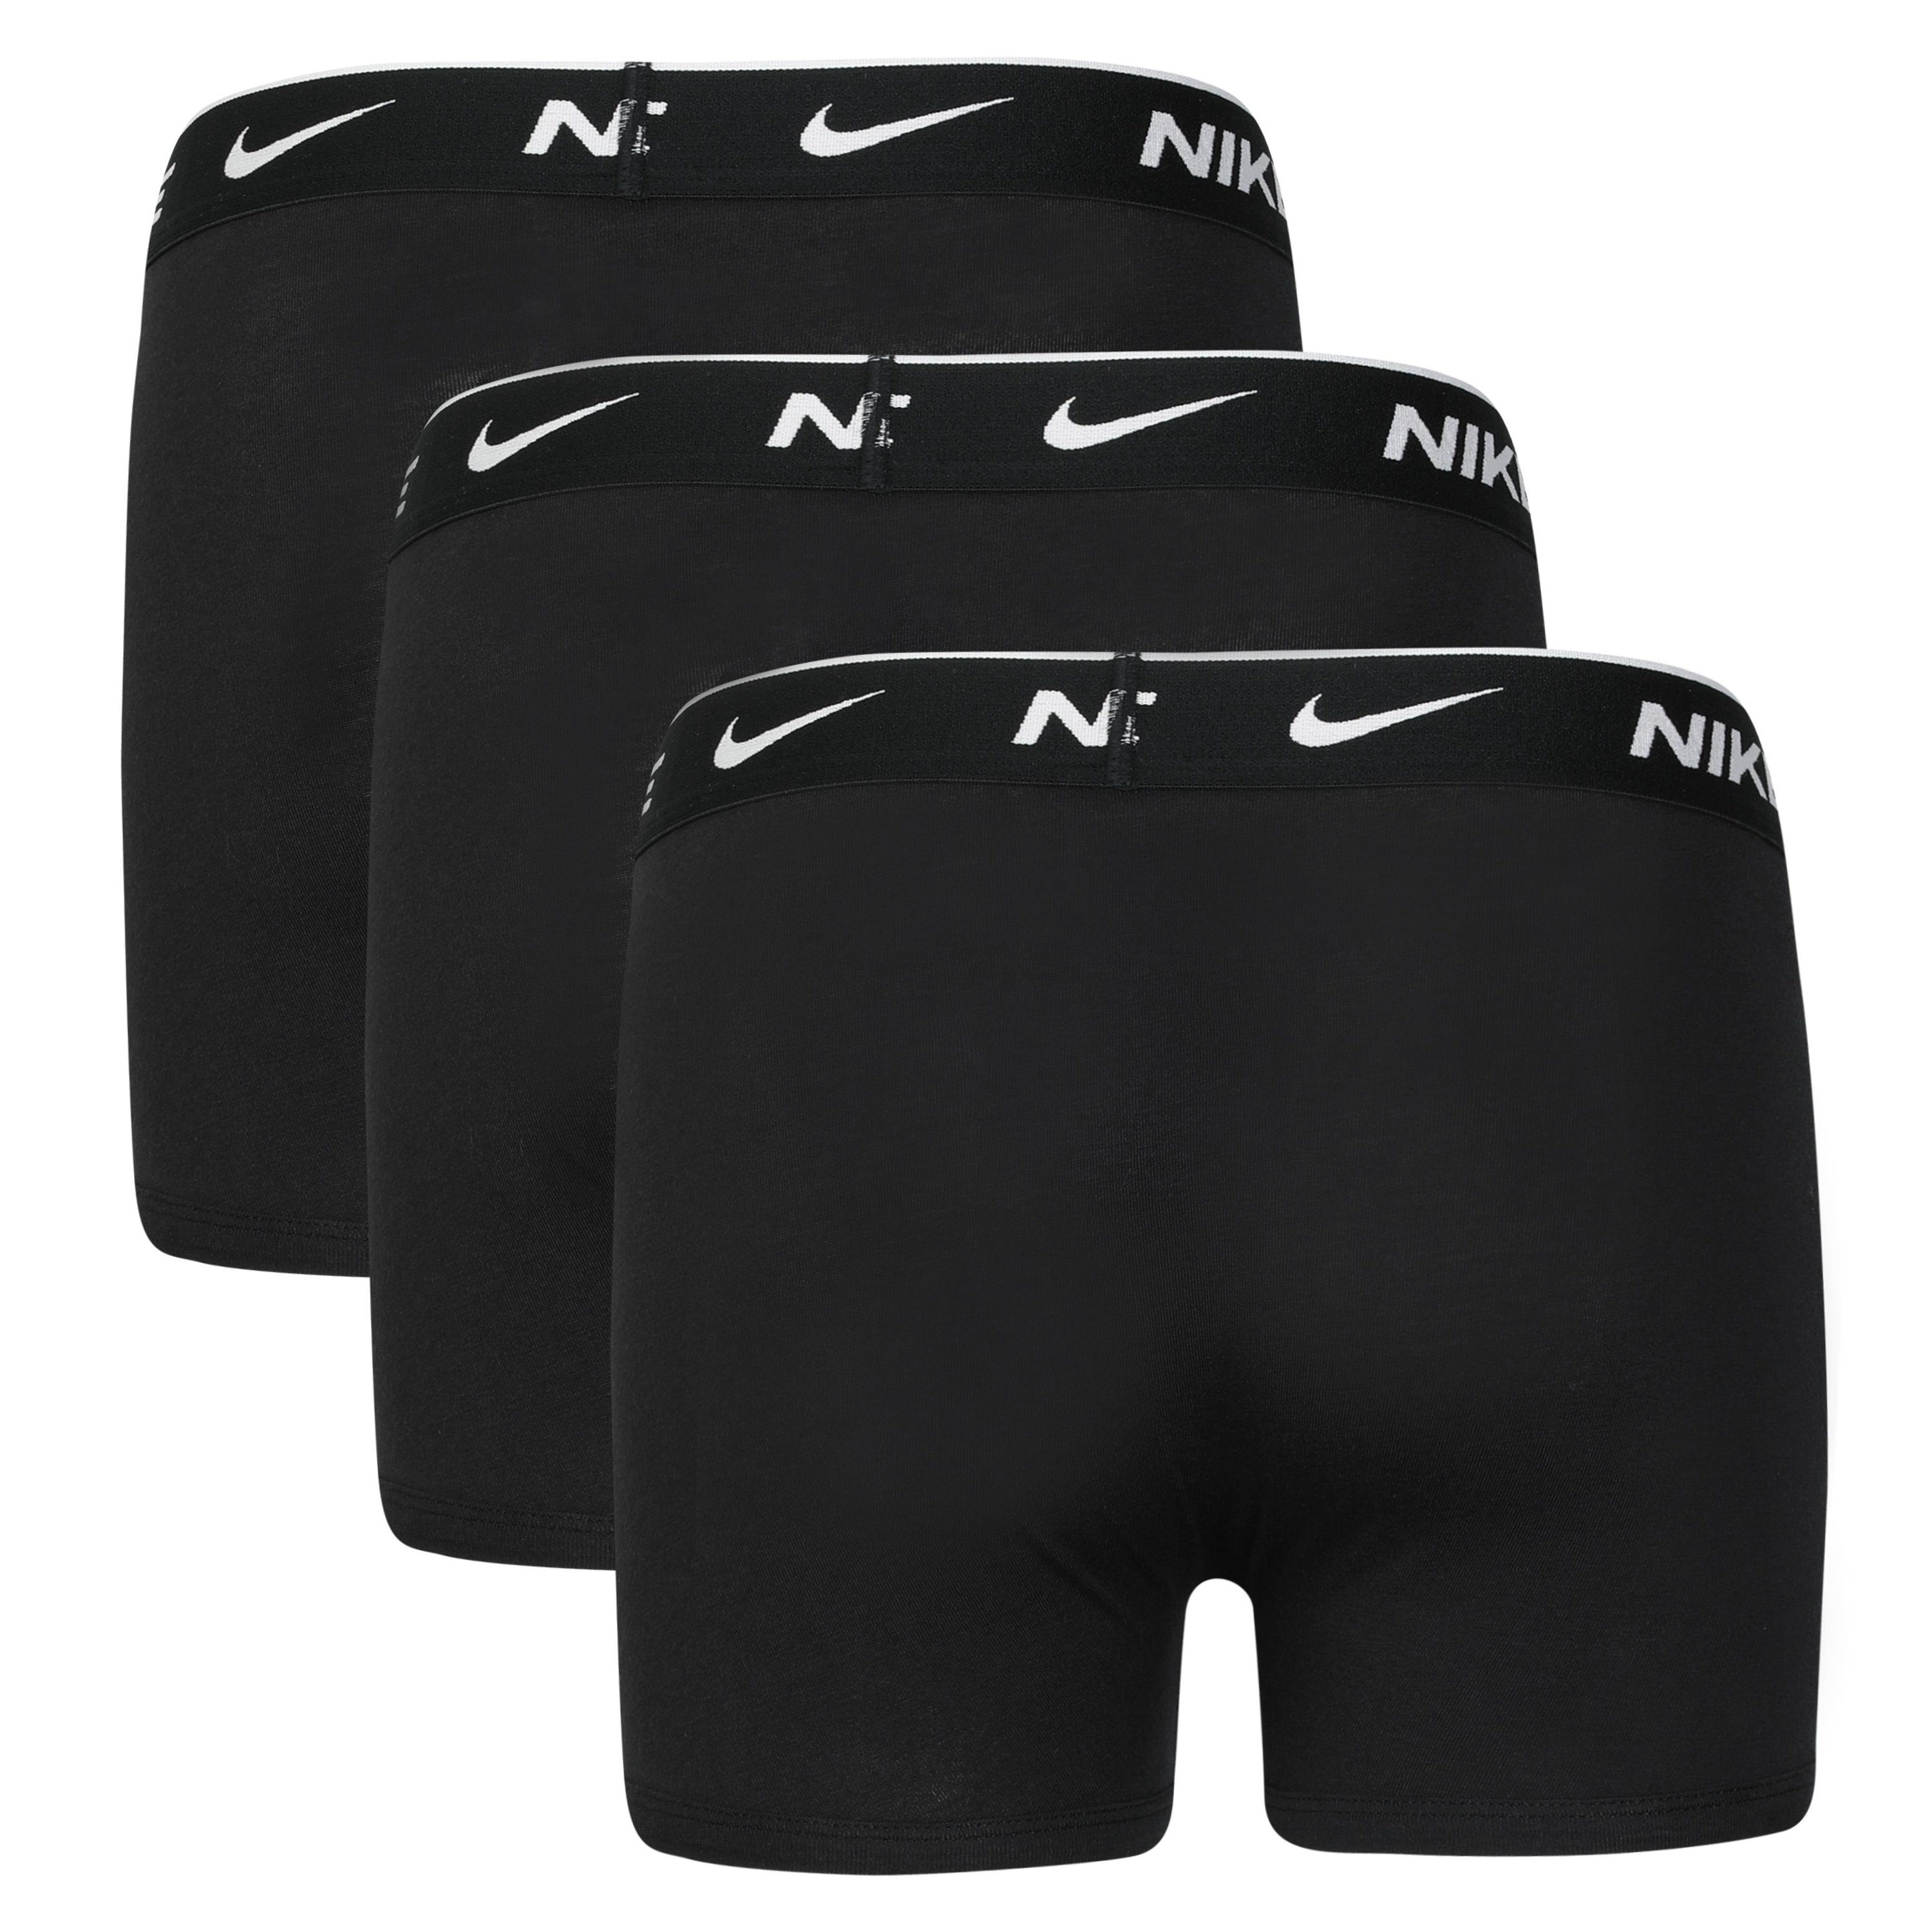 COTTON EVERYDAY Boxershorts schwarz, 3er-Pack) schwarz, BRIEF 3-St., Sportswear BOXER schwarz Nike Kinder (Packung, 3PK für